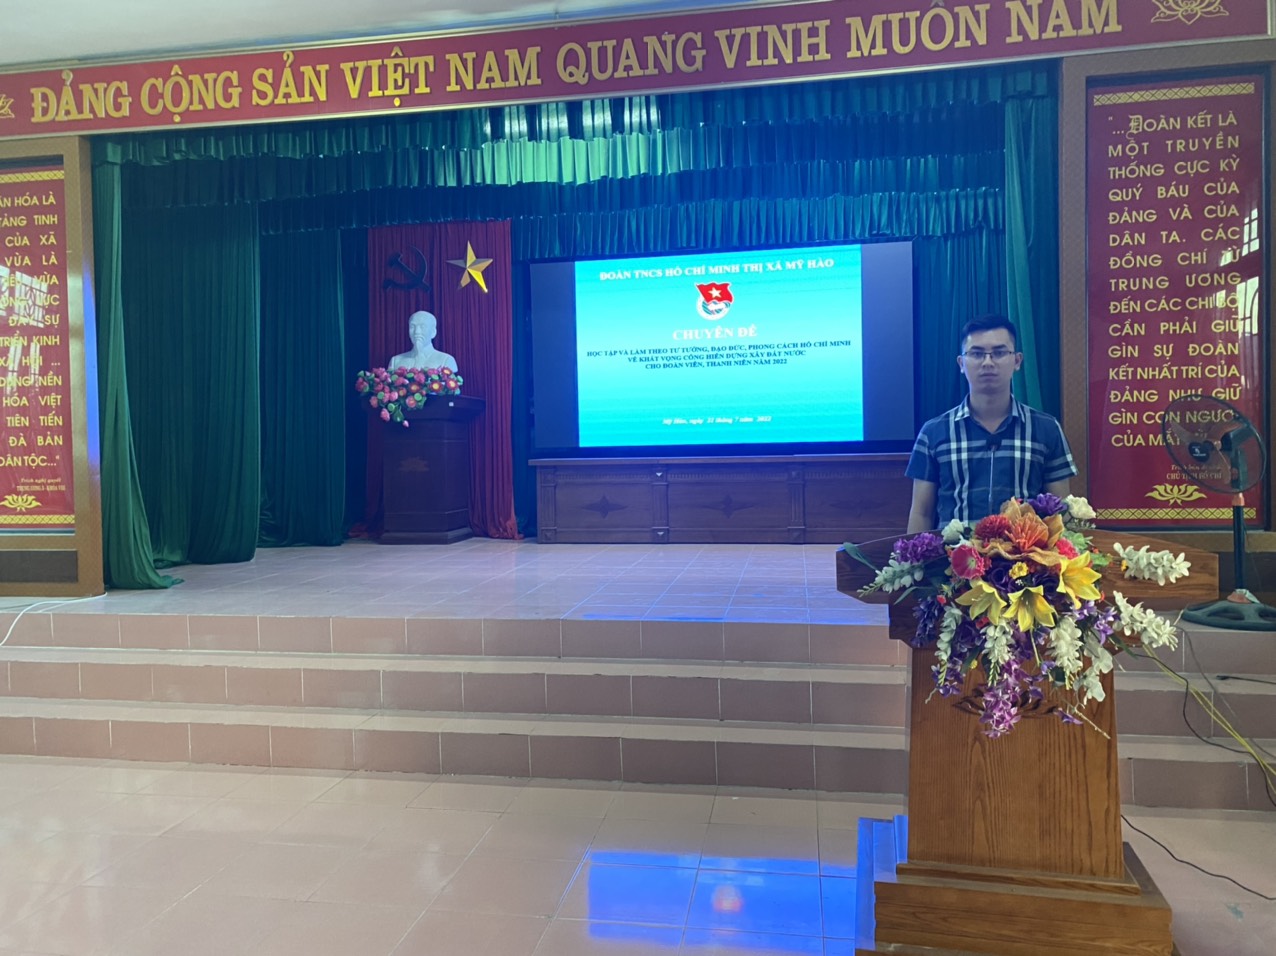 Thị đoàn Mỹ Hào tổ chức Hội nghị học tập và làm theo tư tưởng, đạo đức, phong cách Hồ Chí Minh về khát vọng cống hiến xây dựng đất nước cho đoàn viên thanh niên năm 2022